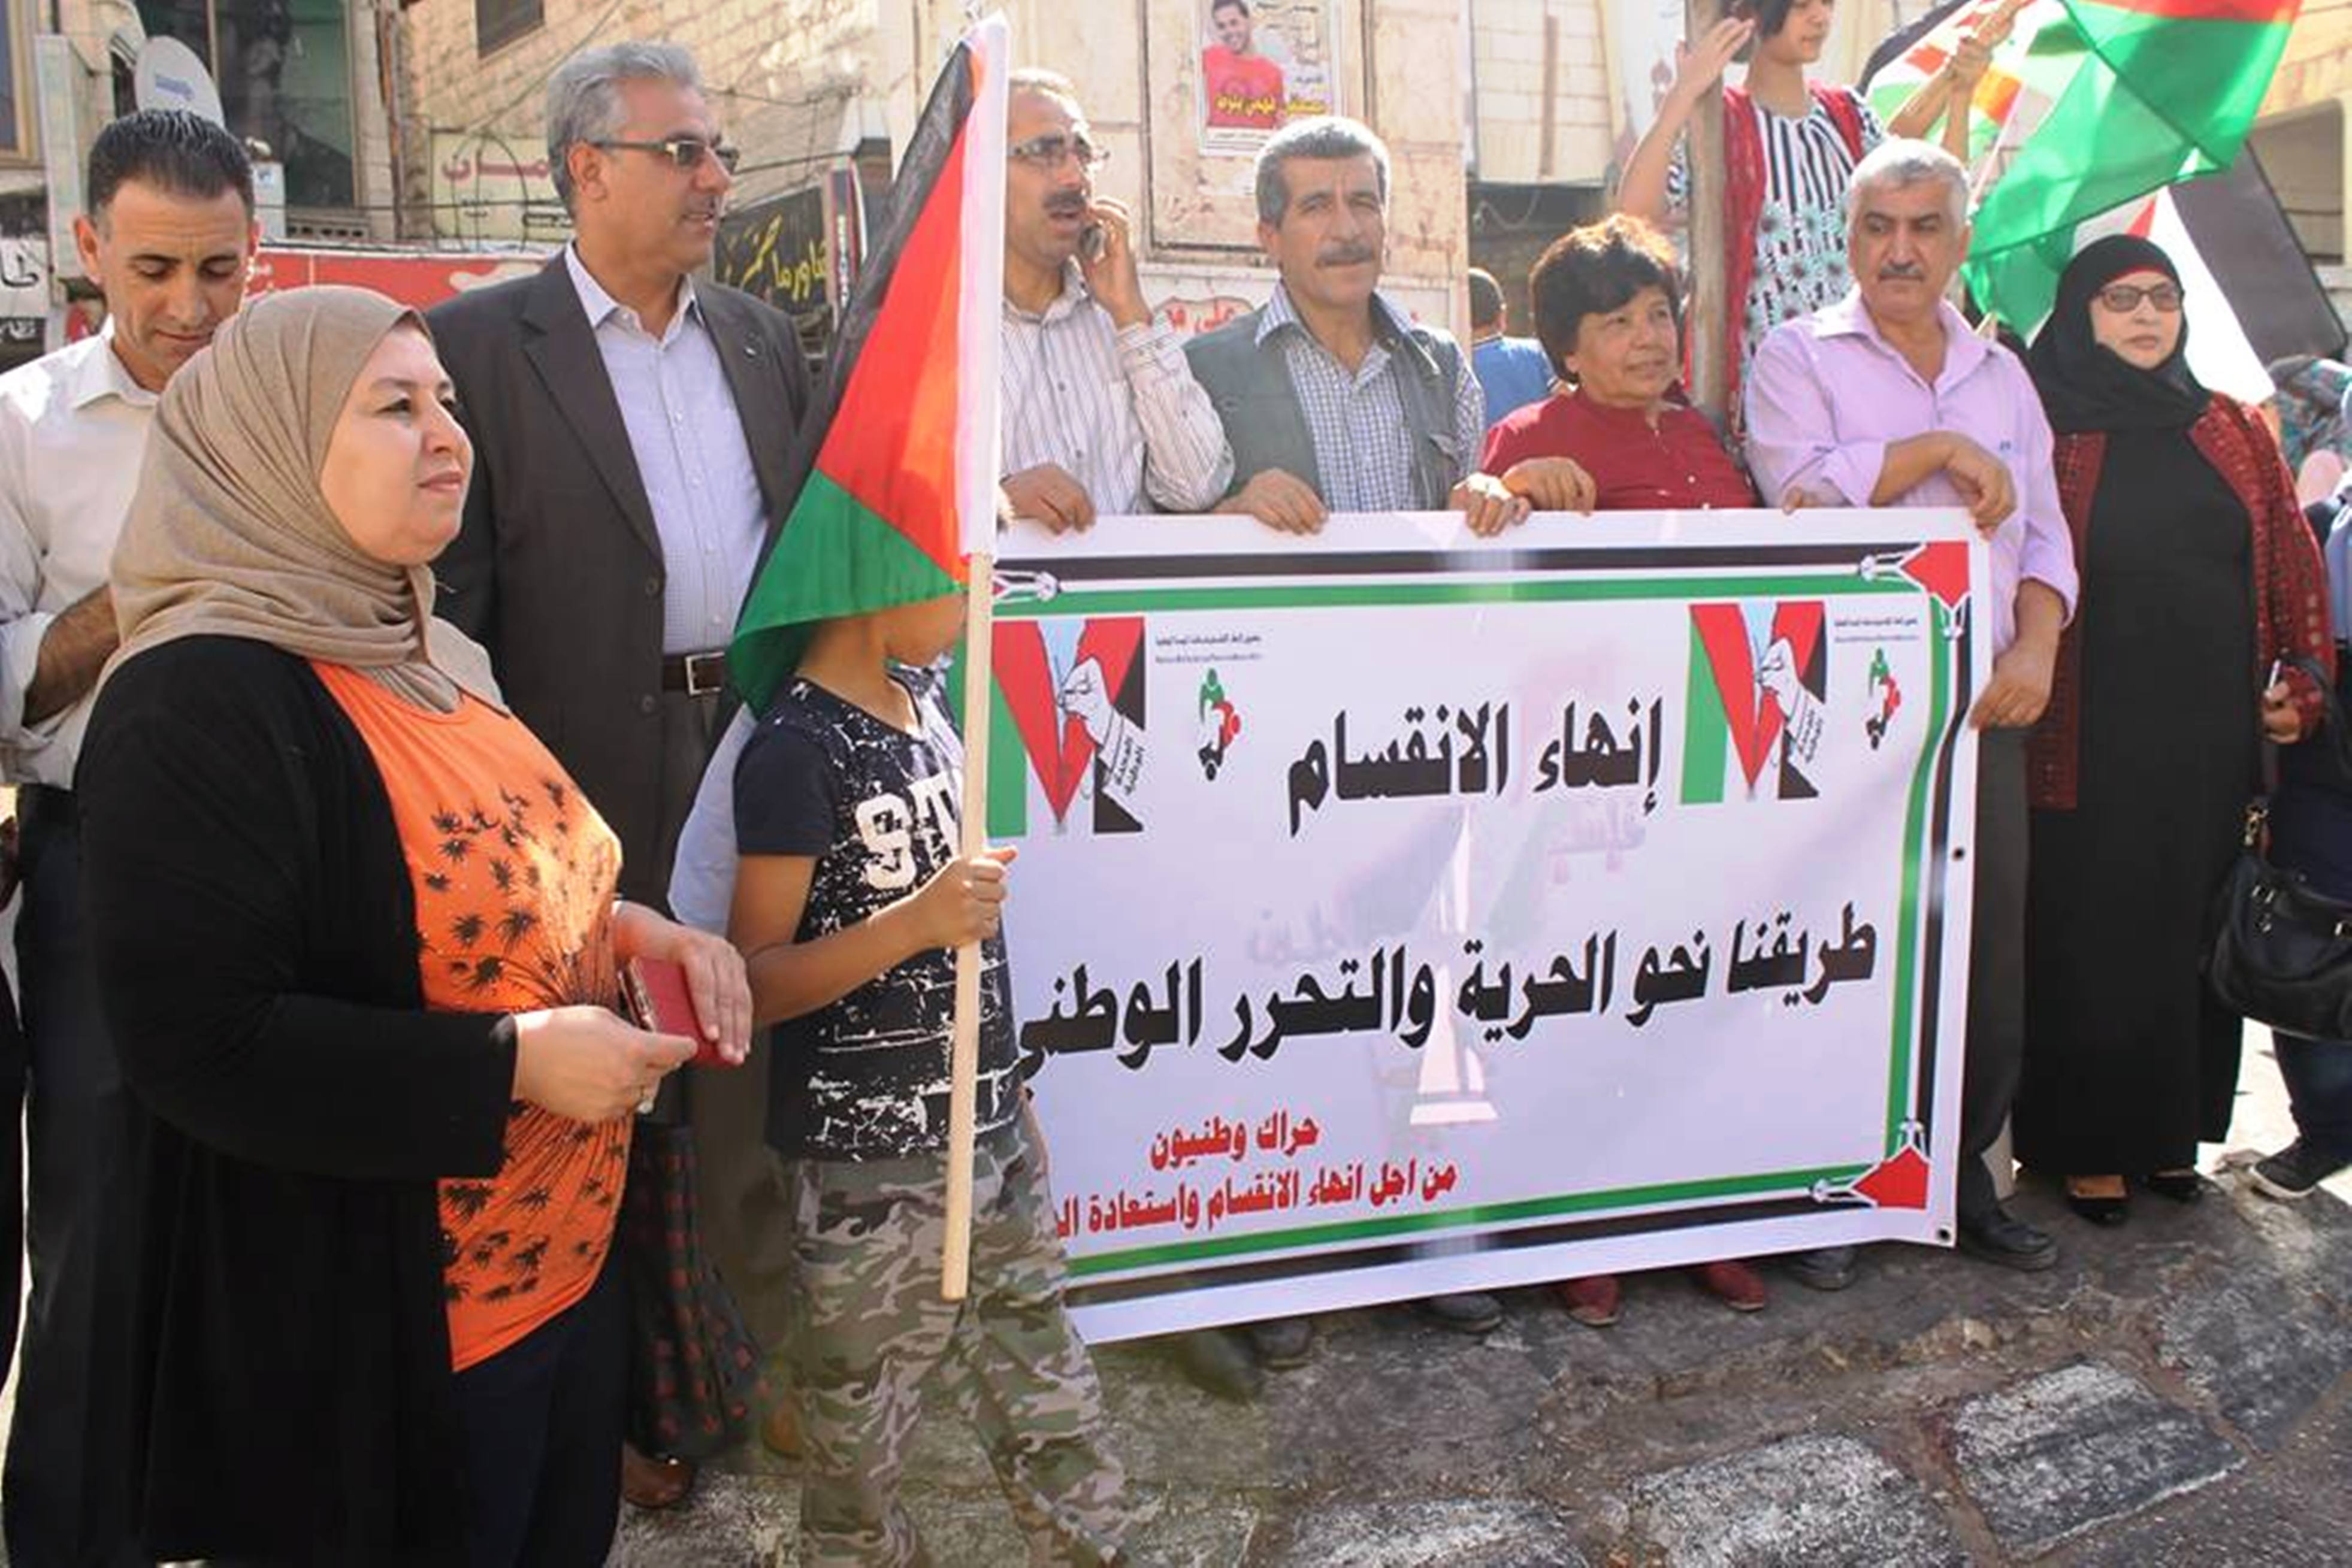 وقفات متزامنة في غزة ورام الله للمطالبة بإنهاء الانقسام